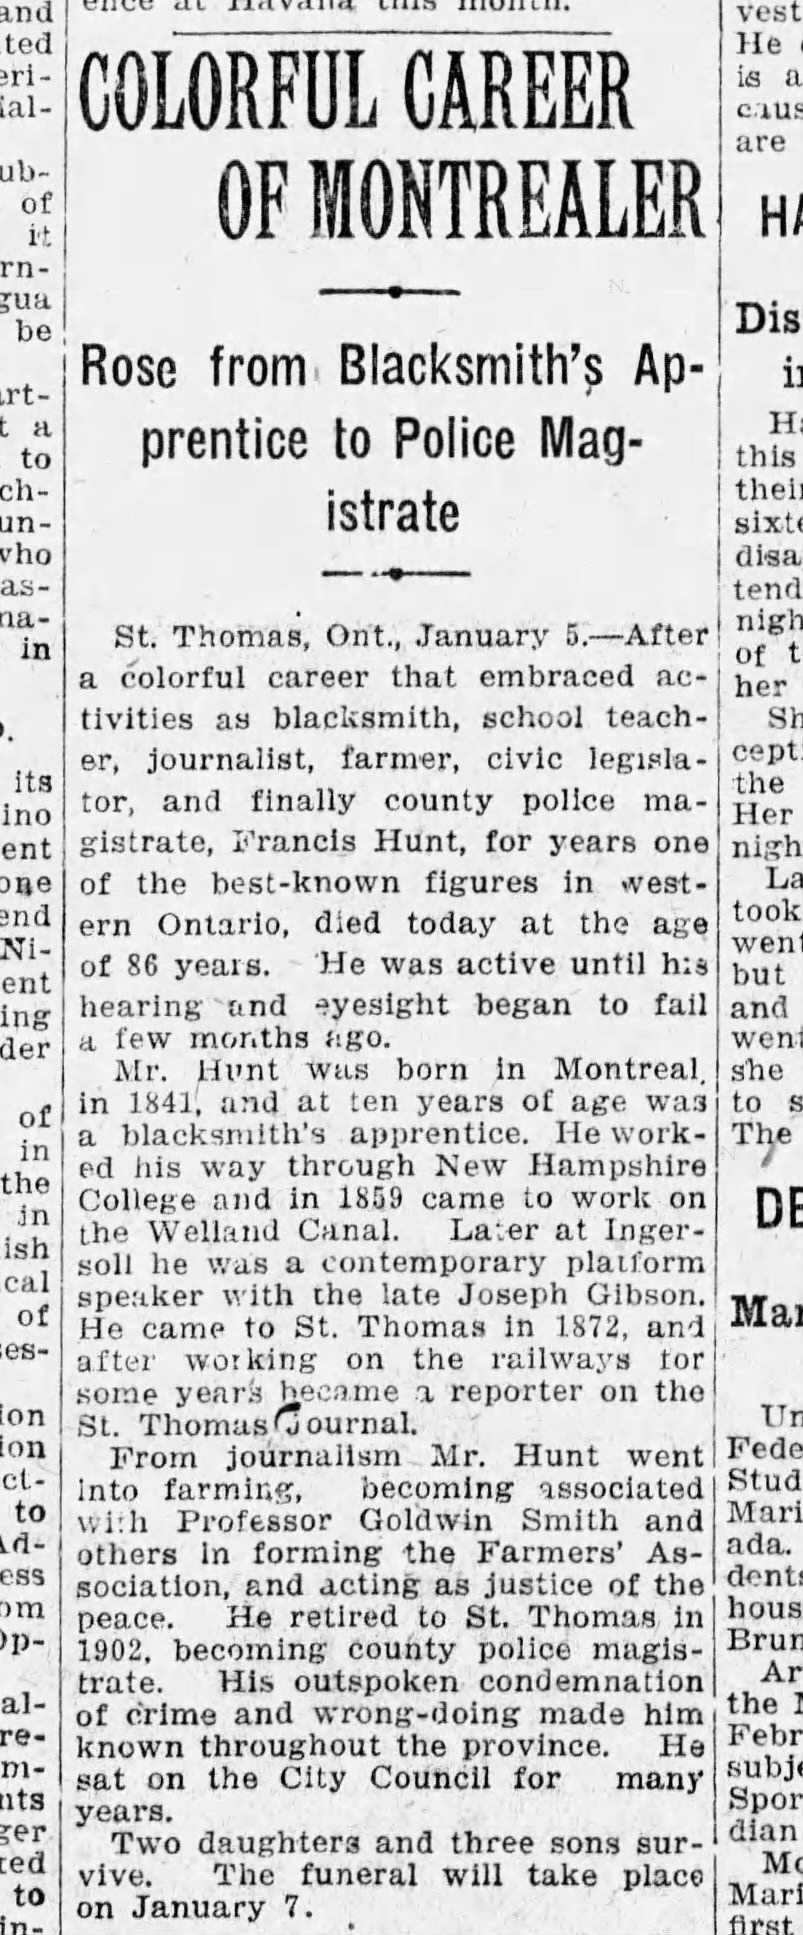 Frank Hunt obitGazette, Montreal Jan. 6, 1928 Friday, pg. 2